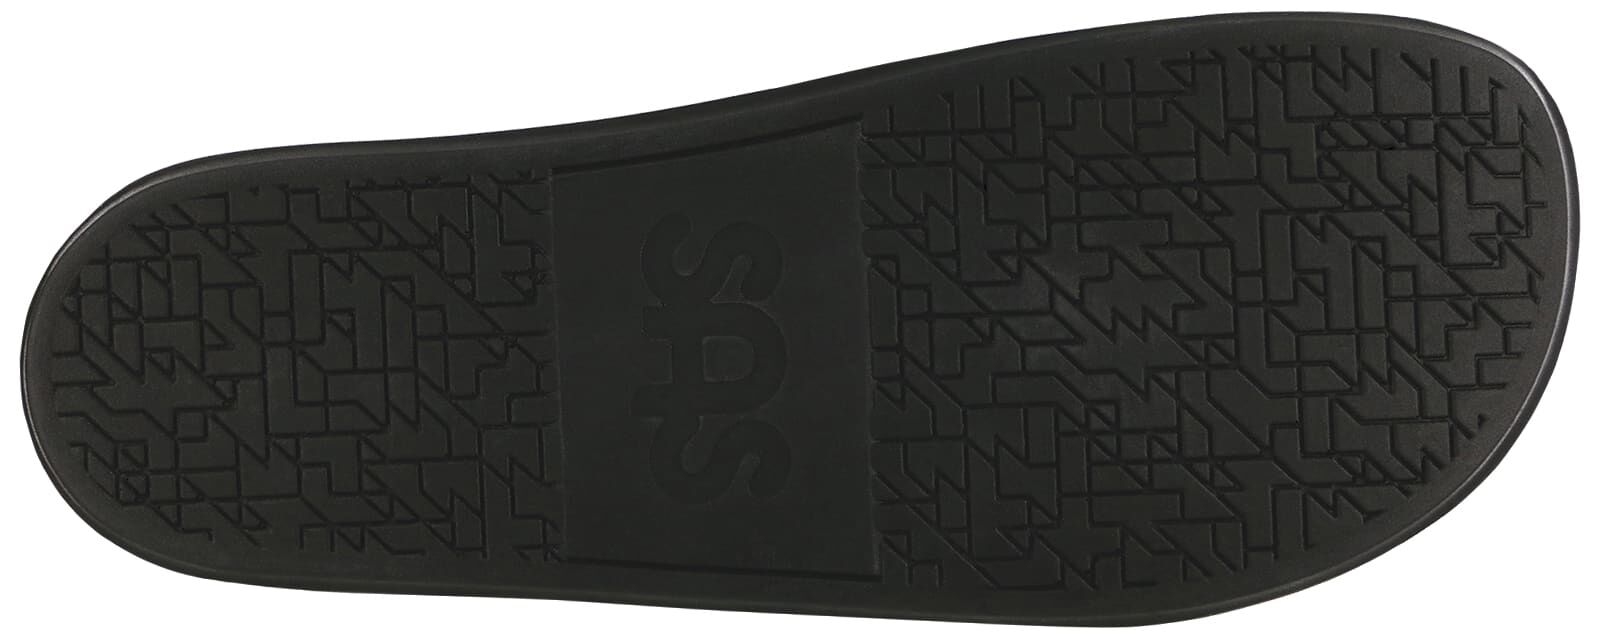 Edge Slide Sandal | SAS Shoes